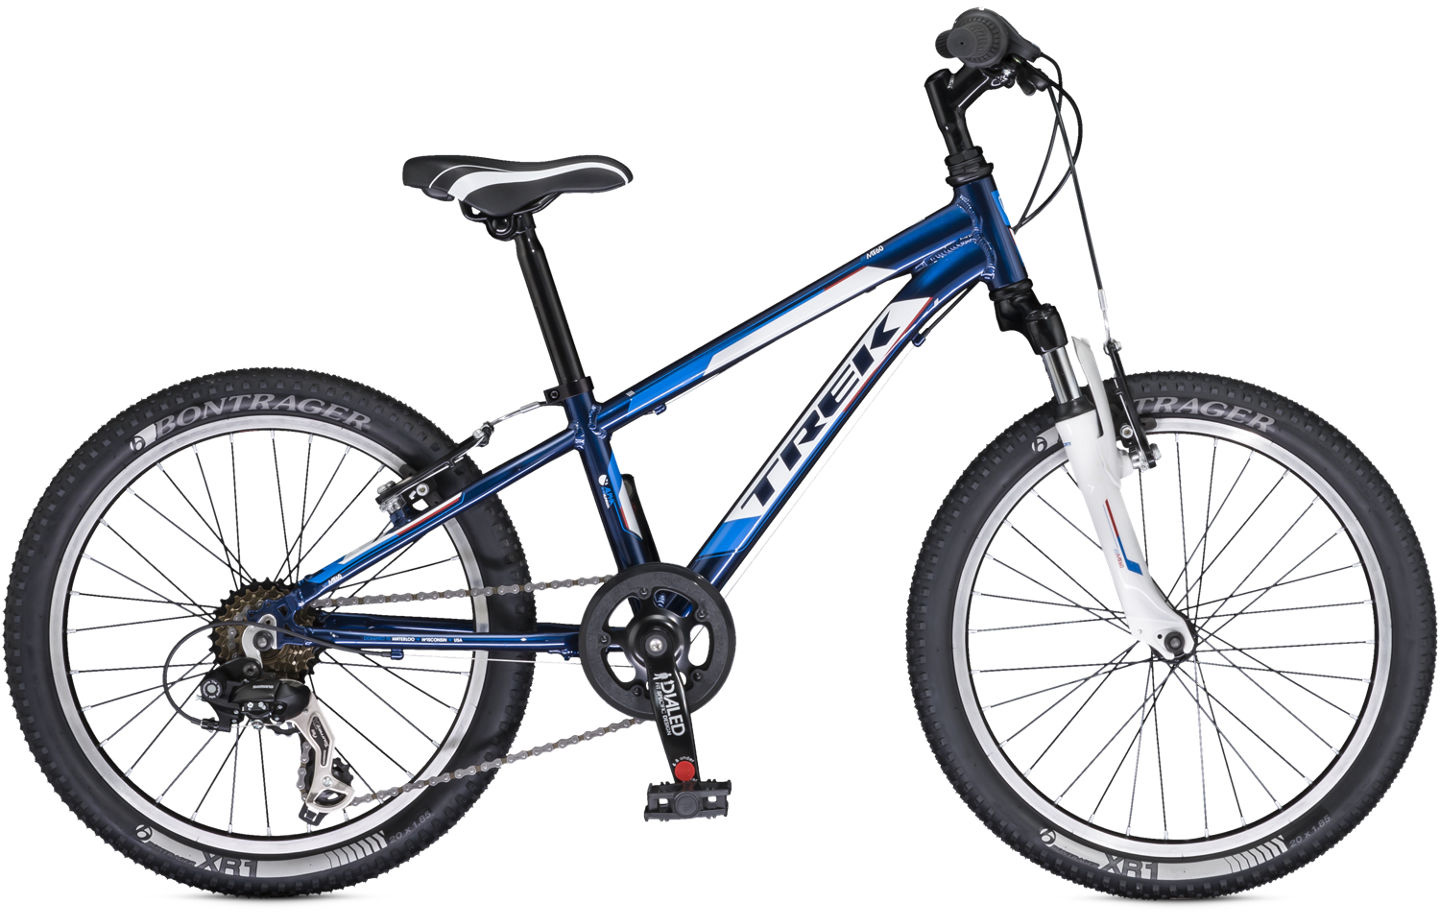 2015 Trek MT 60 - Bicycle Details 